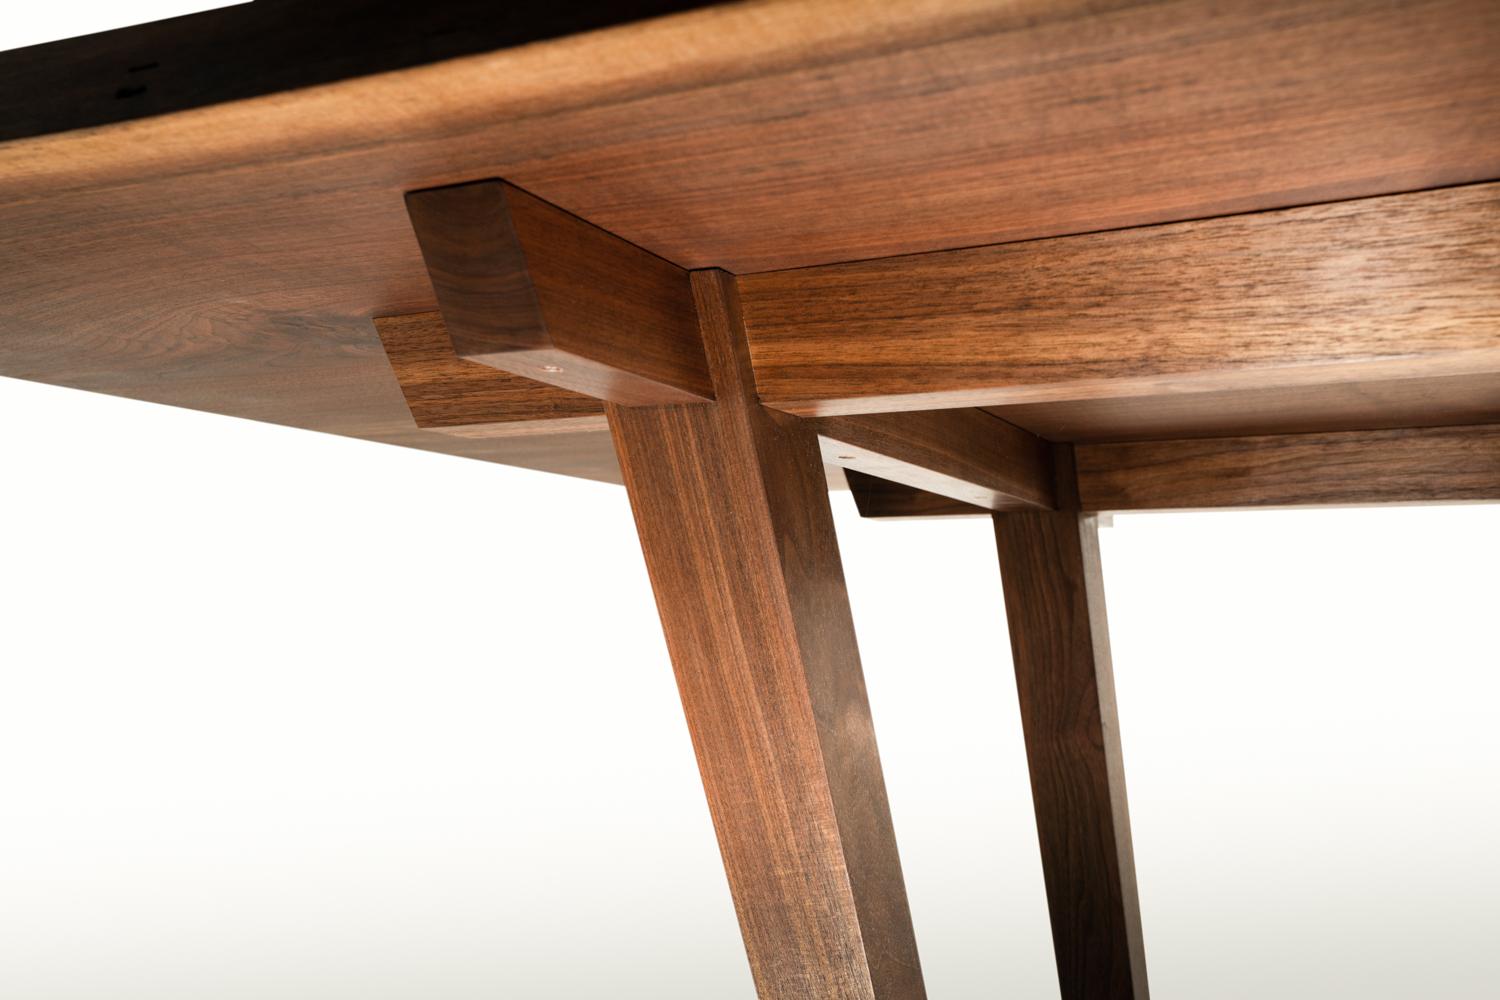 Origineller Entwurf eines Esstisches mit gespreizten Beinen und winkelförmigen Verbindungselementen. Dieses Tischdesign ist von traditionellen japanischen Tischlereielementen inspiriert und verwendet ineinandergreifende Tischlerarbeiten, die den